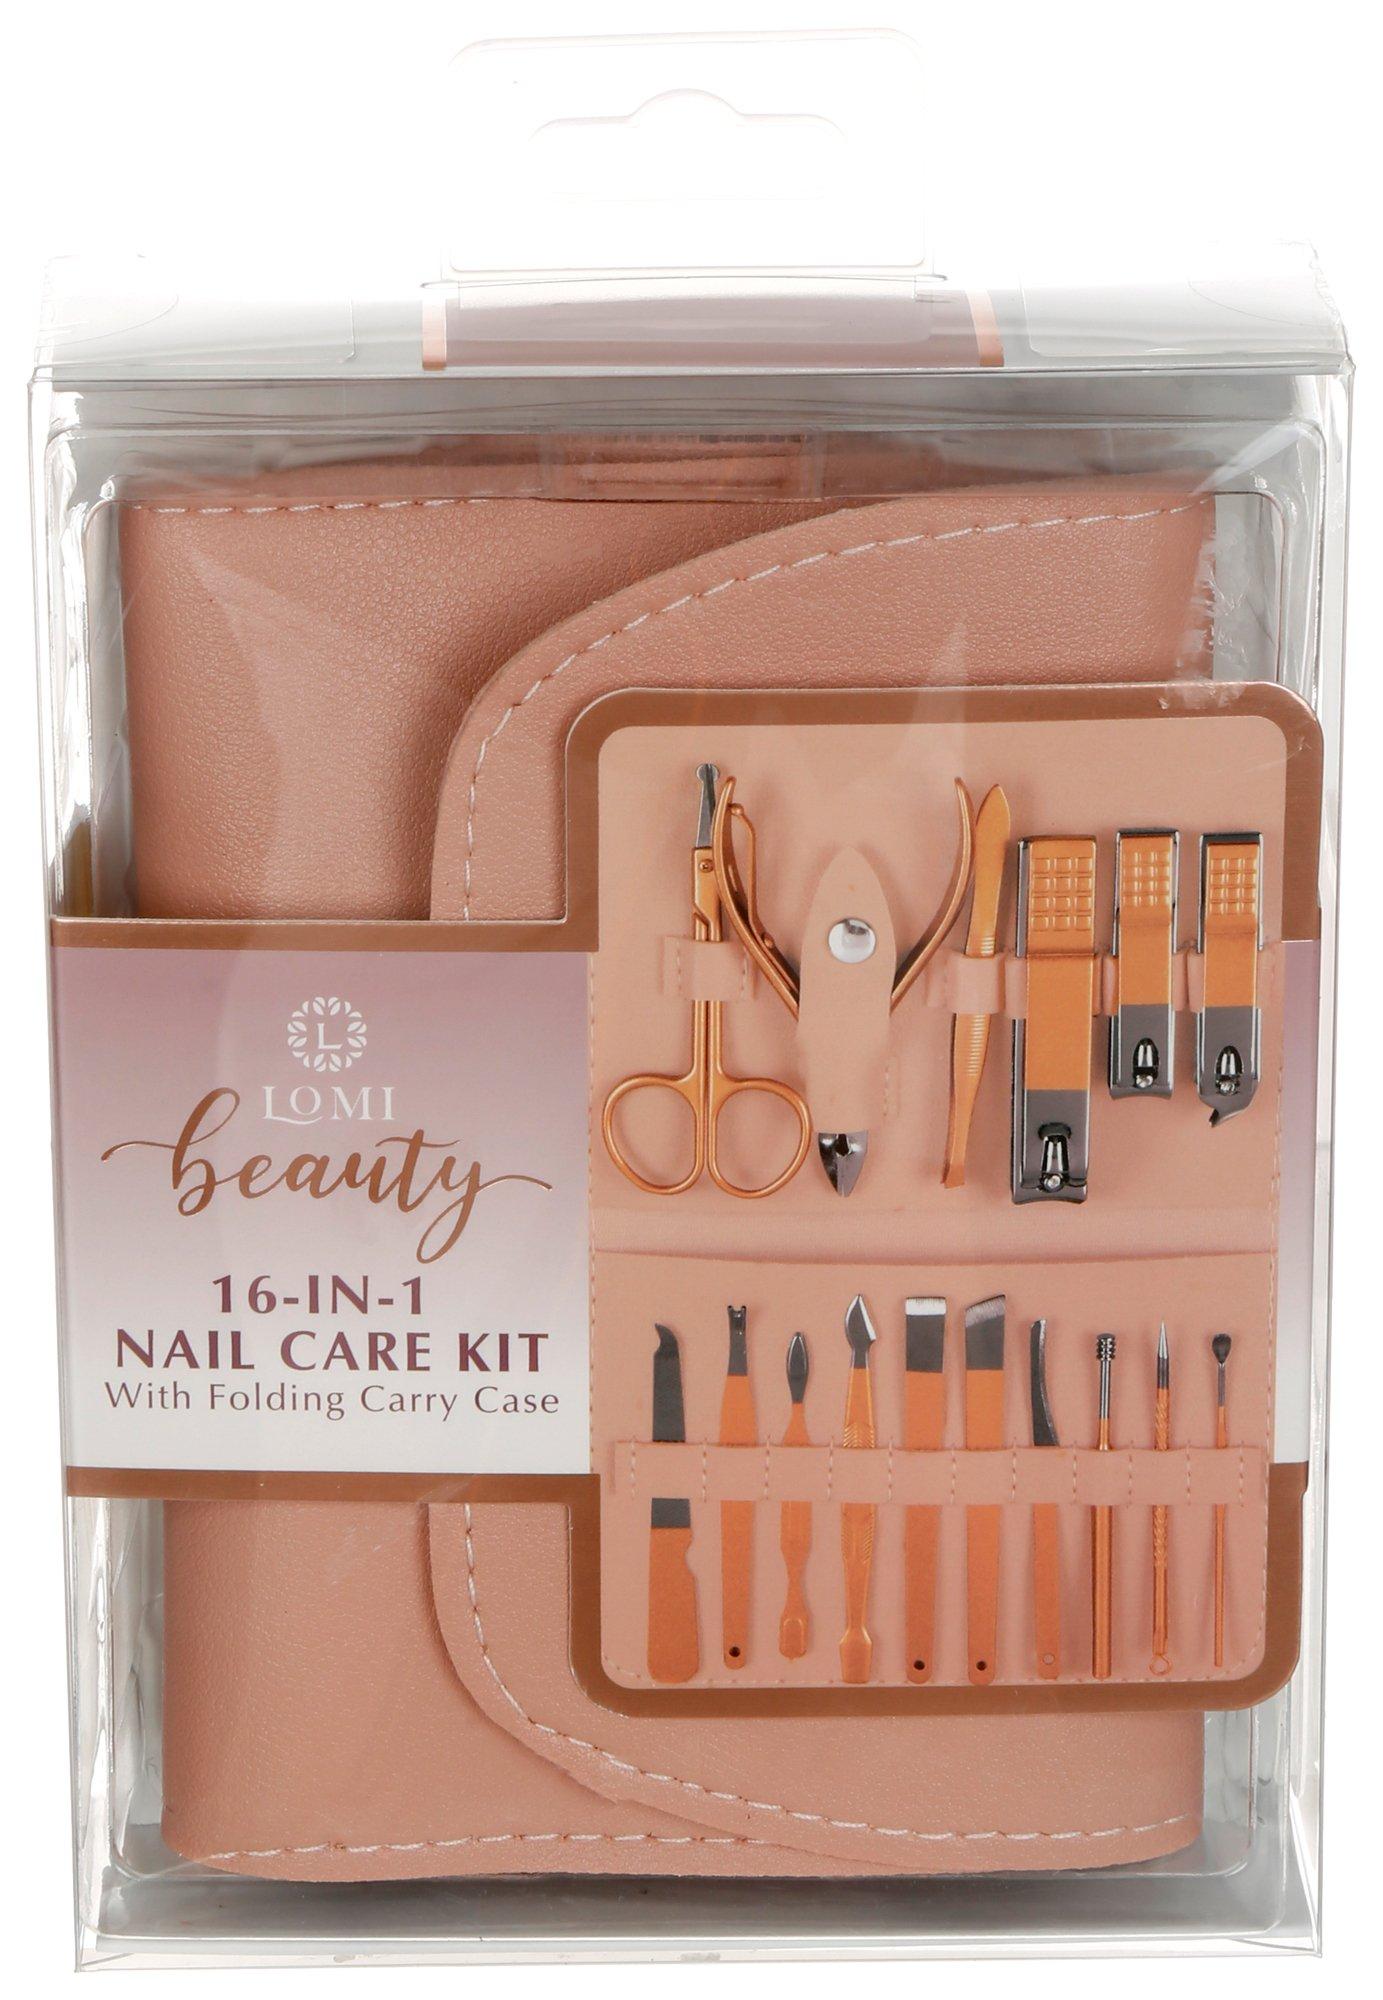 16-In-1 Nail Care Kit